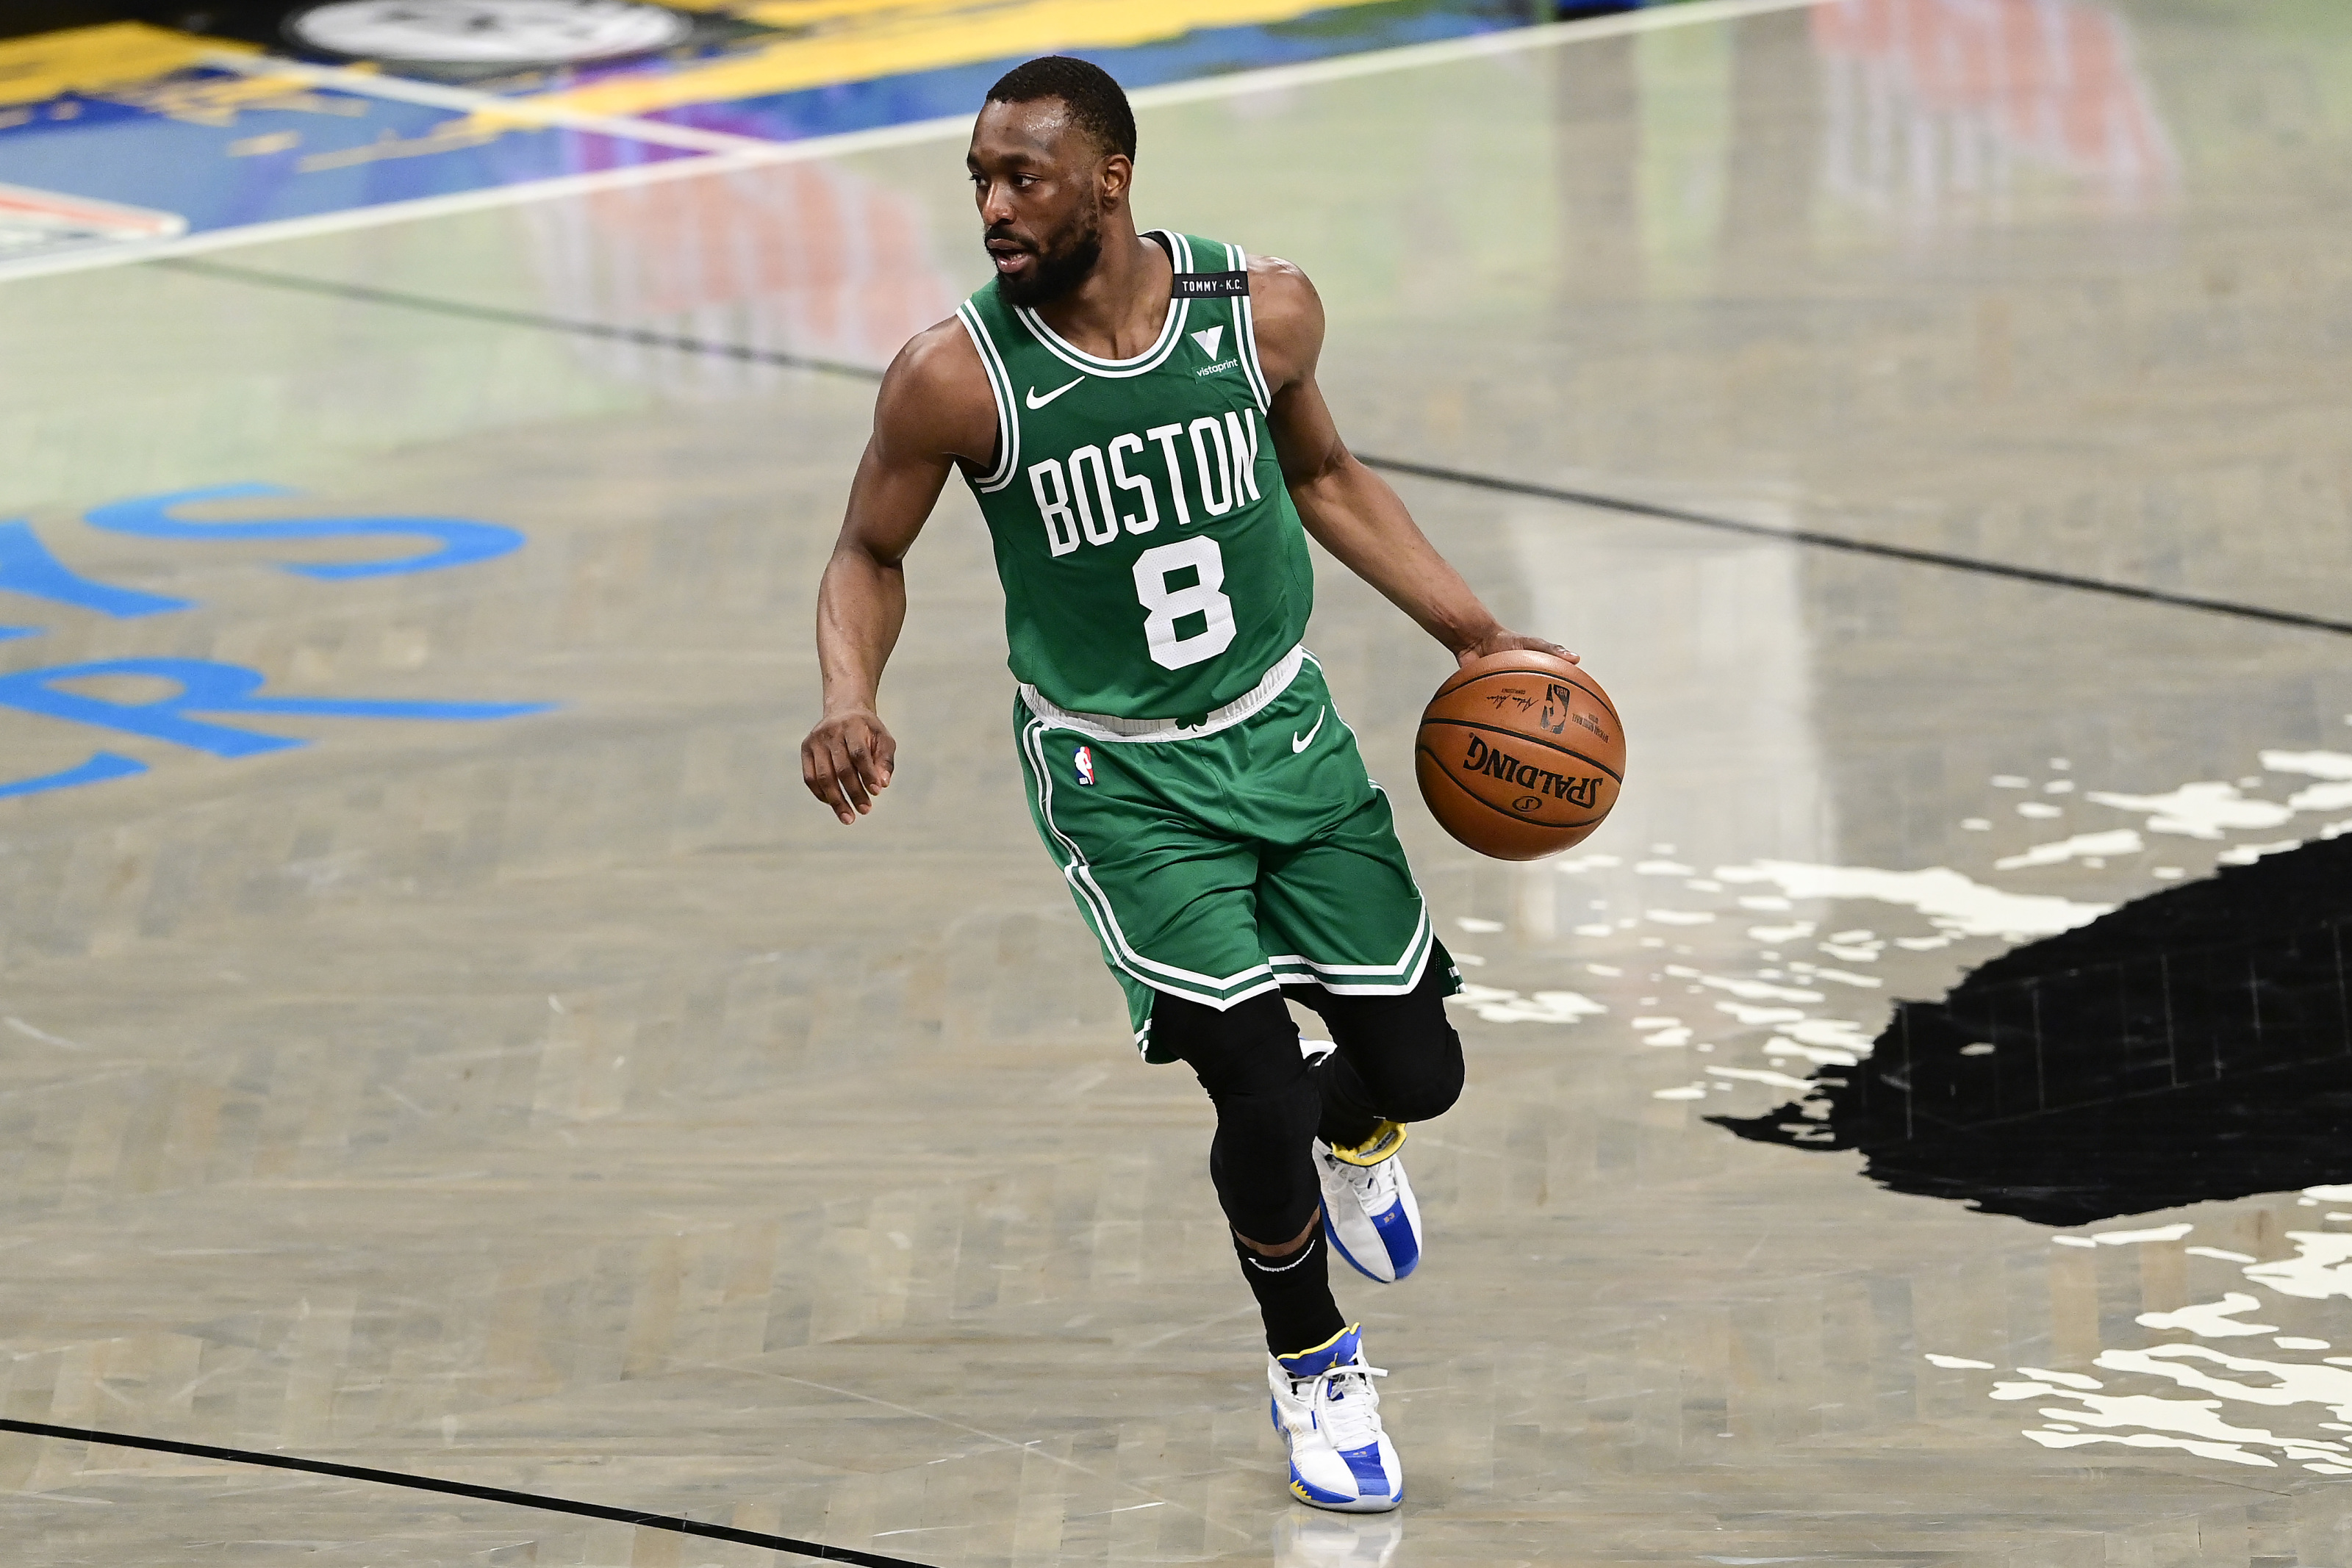 Kemba Walker in Celtics new city jersey